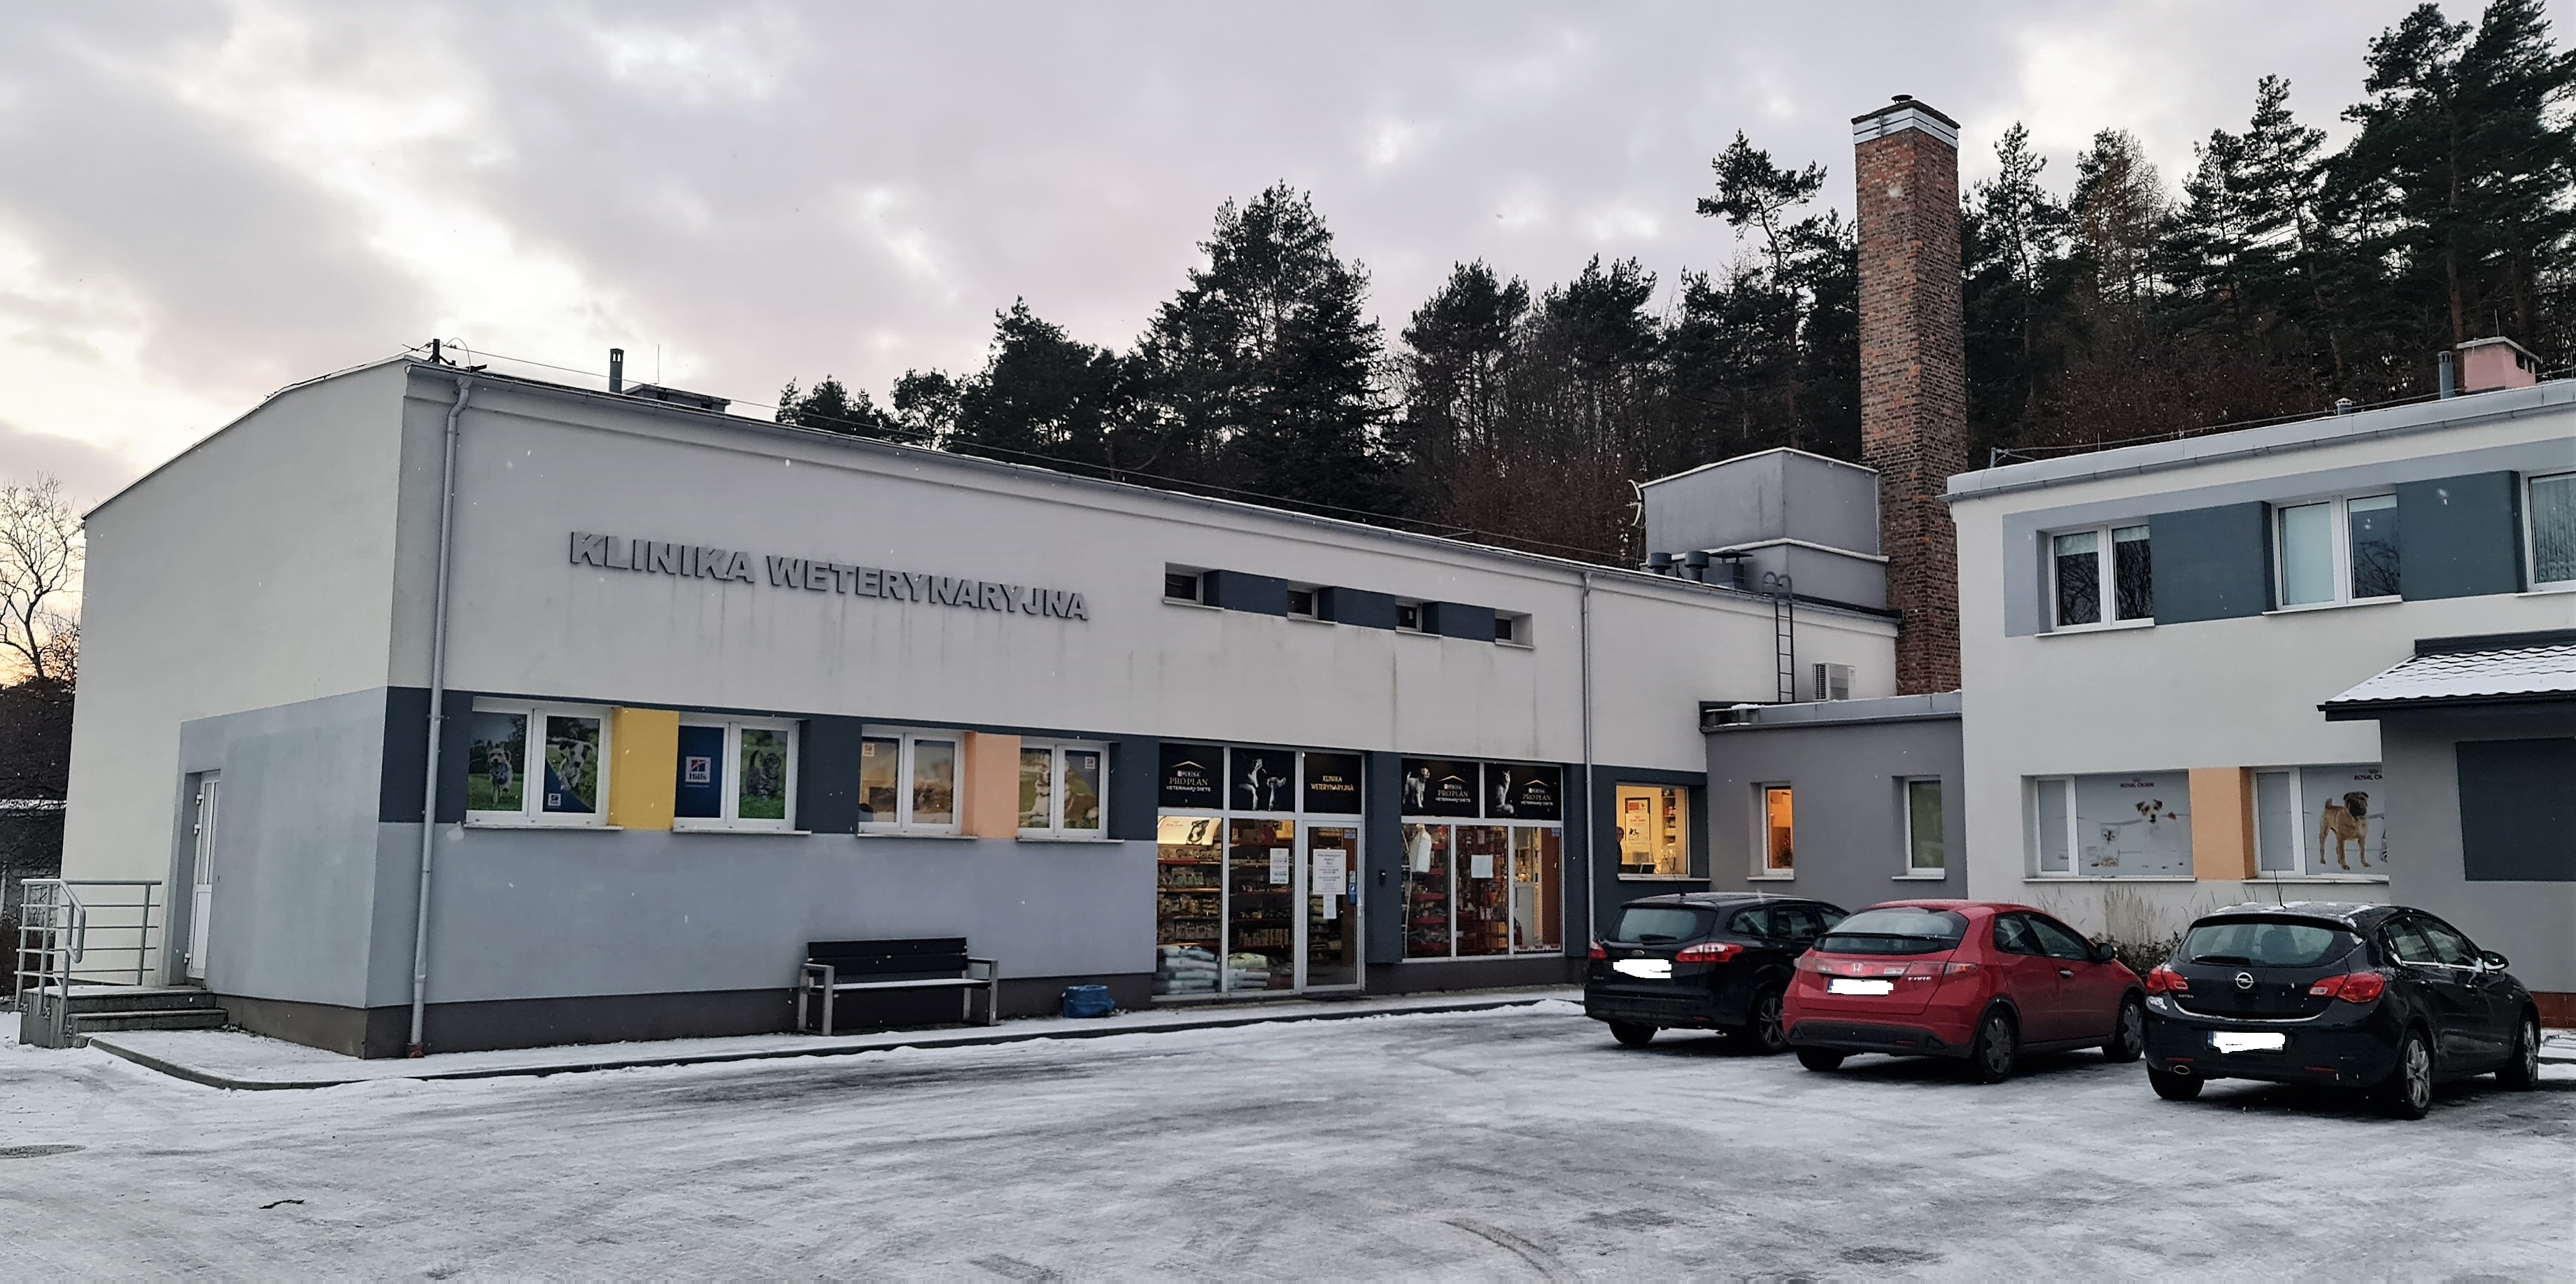 Klinika Weterynaryjna S.C. w Gdyni. Fot. Zygmunt Gołab